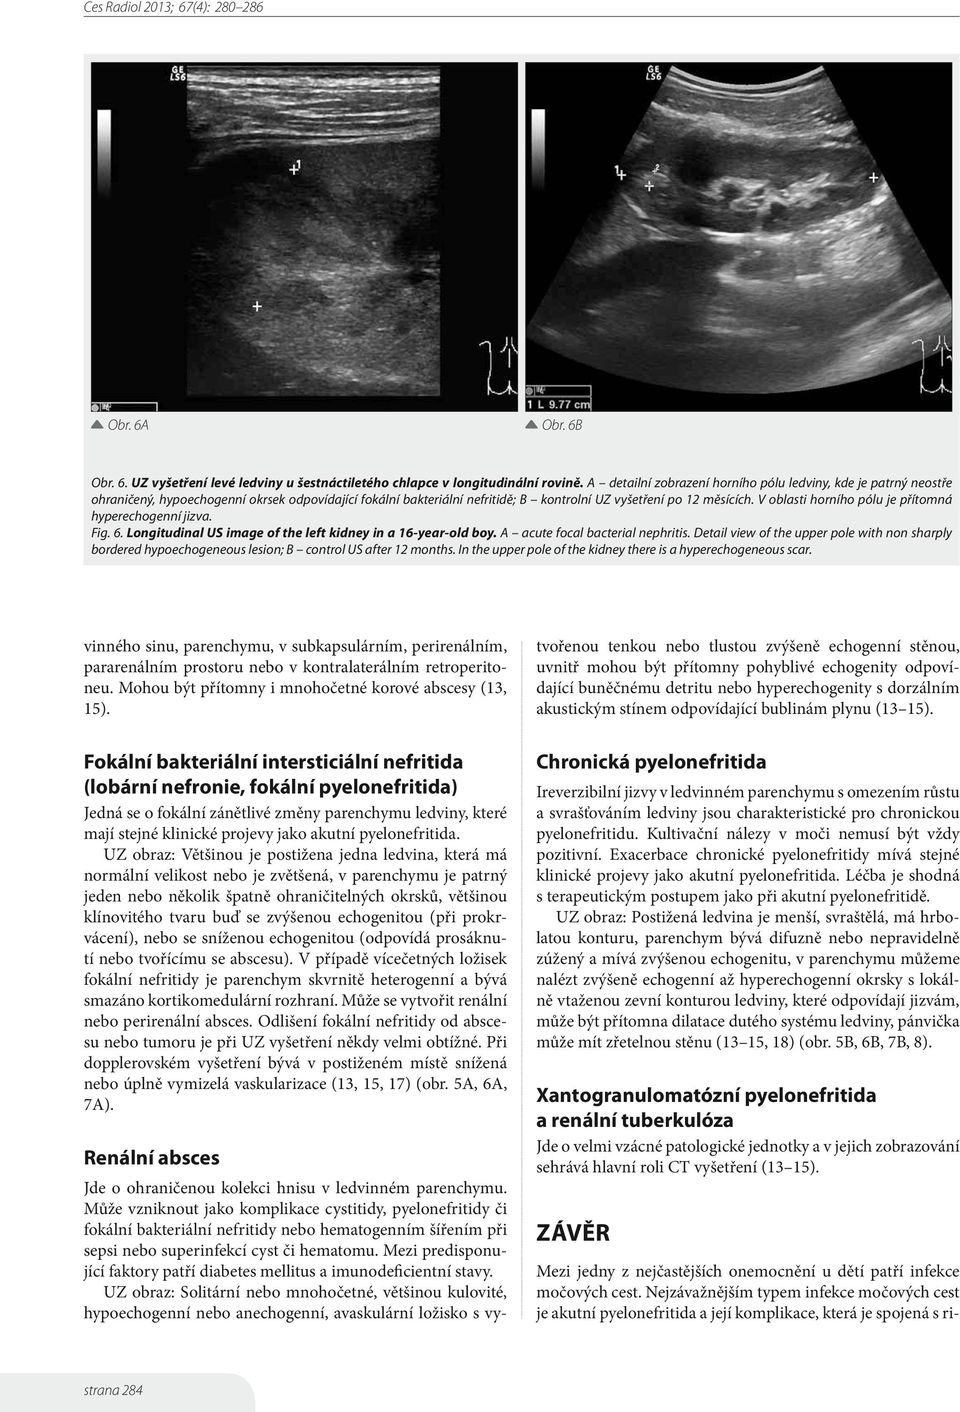 V oblasti horního pólu je přítomná hyperechogenní jizva. Fig. 6. Longitudinal US image of the left kidney in a 16-year-old boy. A acute focal bacterial nephritis.